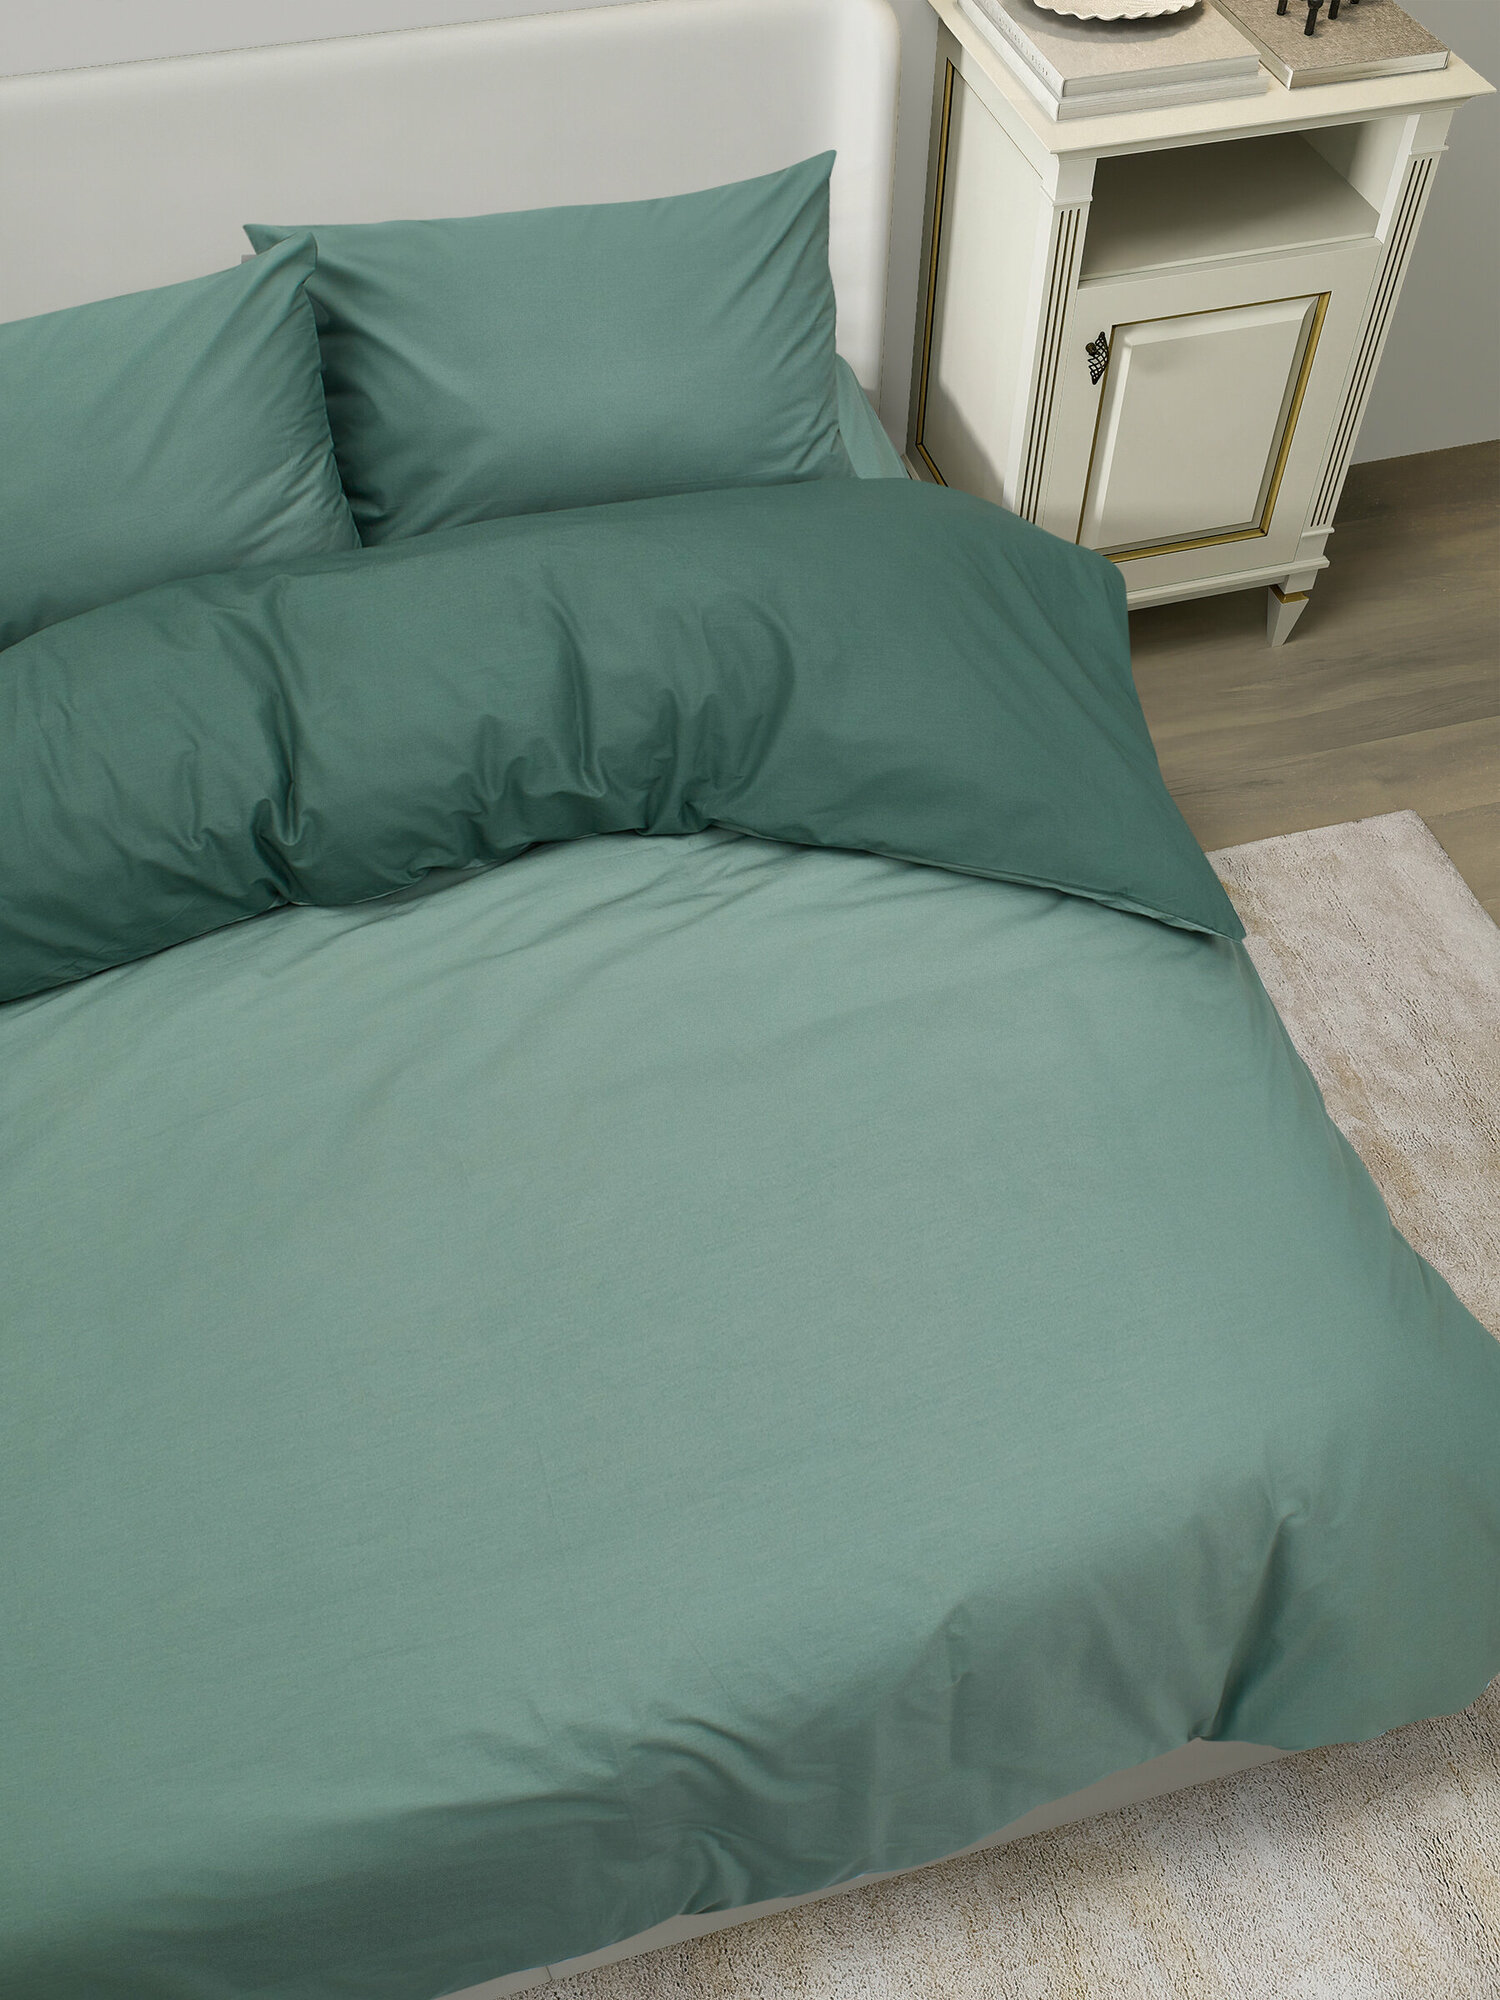 Постельное белье 2 спальное Соммерс/STRANDTALL пододеяльник 200 х 200, наволочки 50x70 (2 шт) зеленый